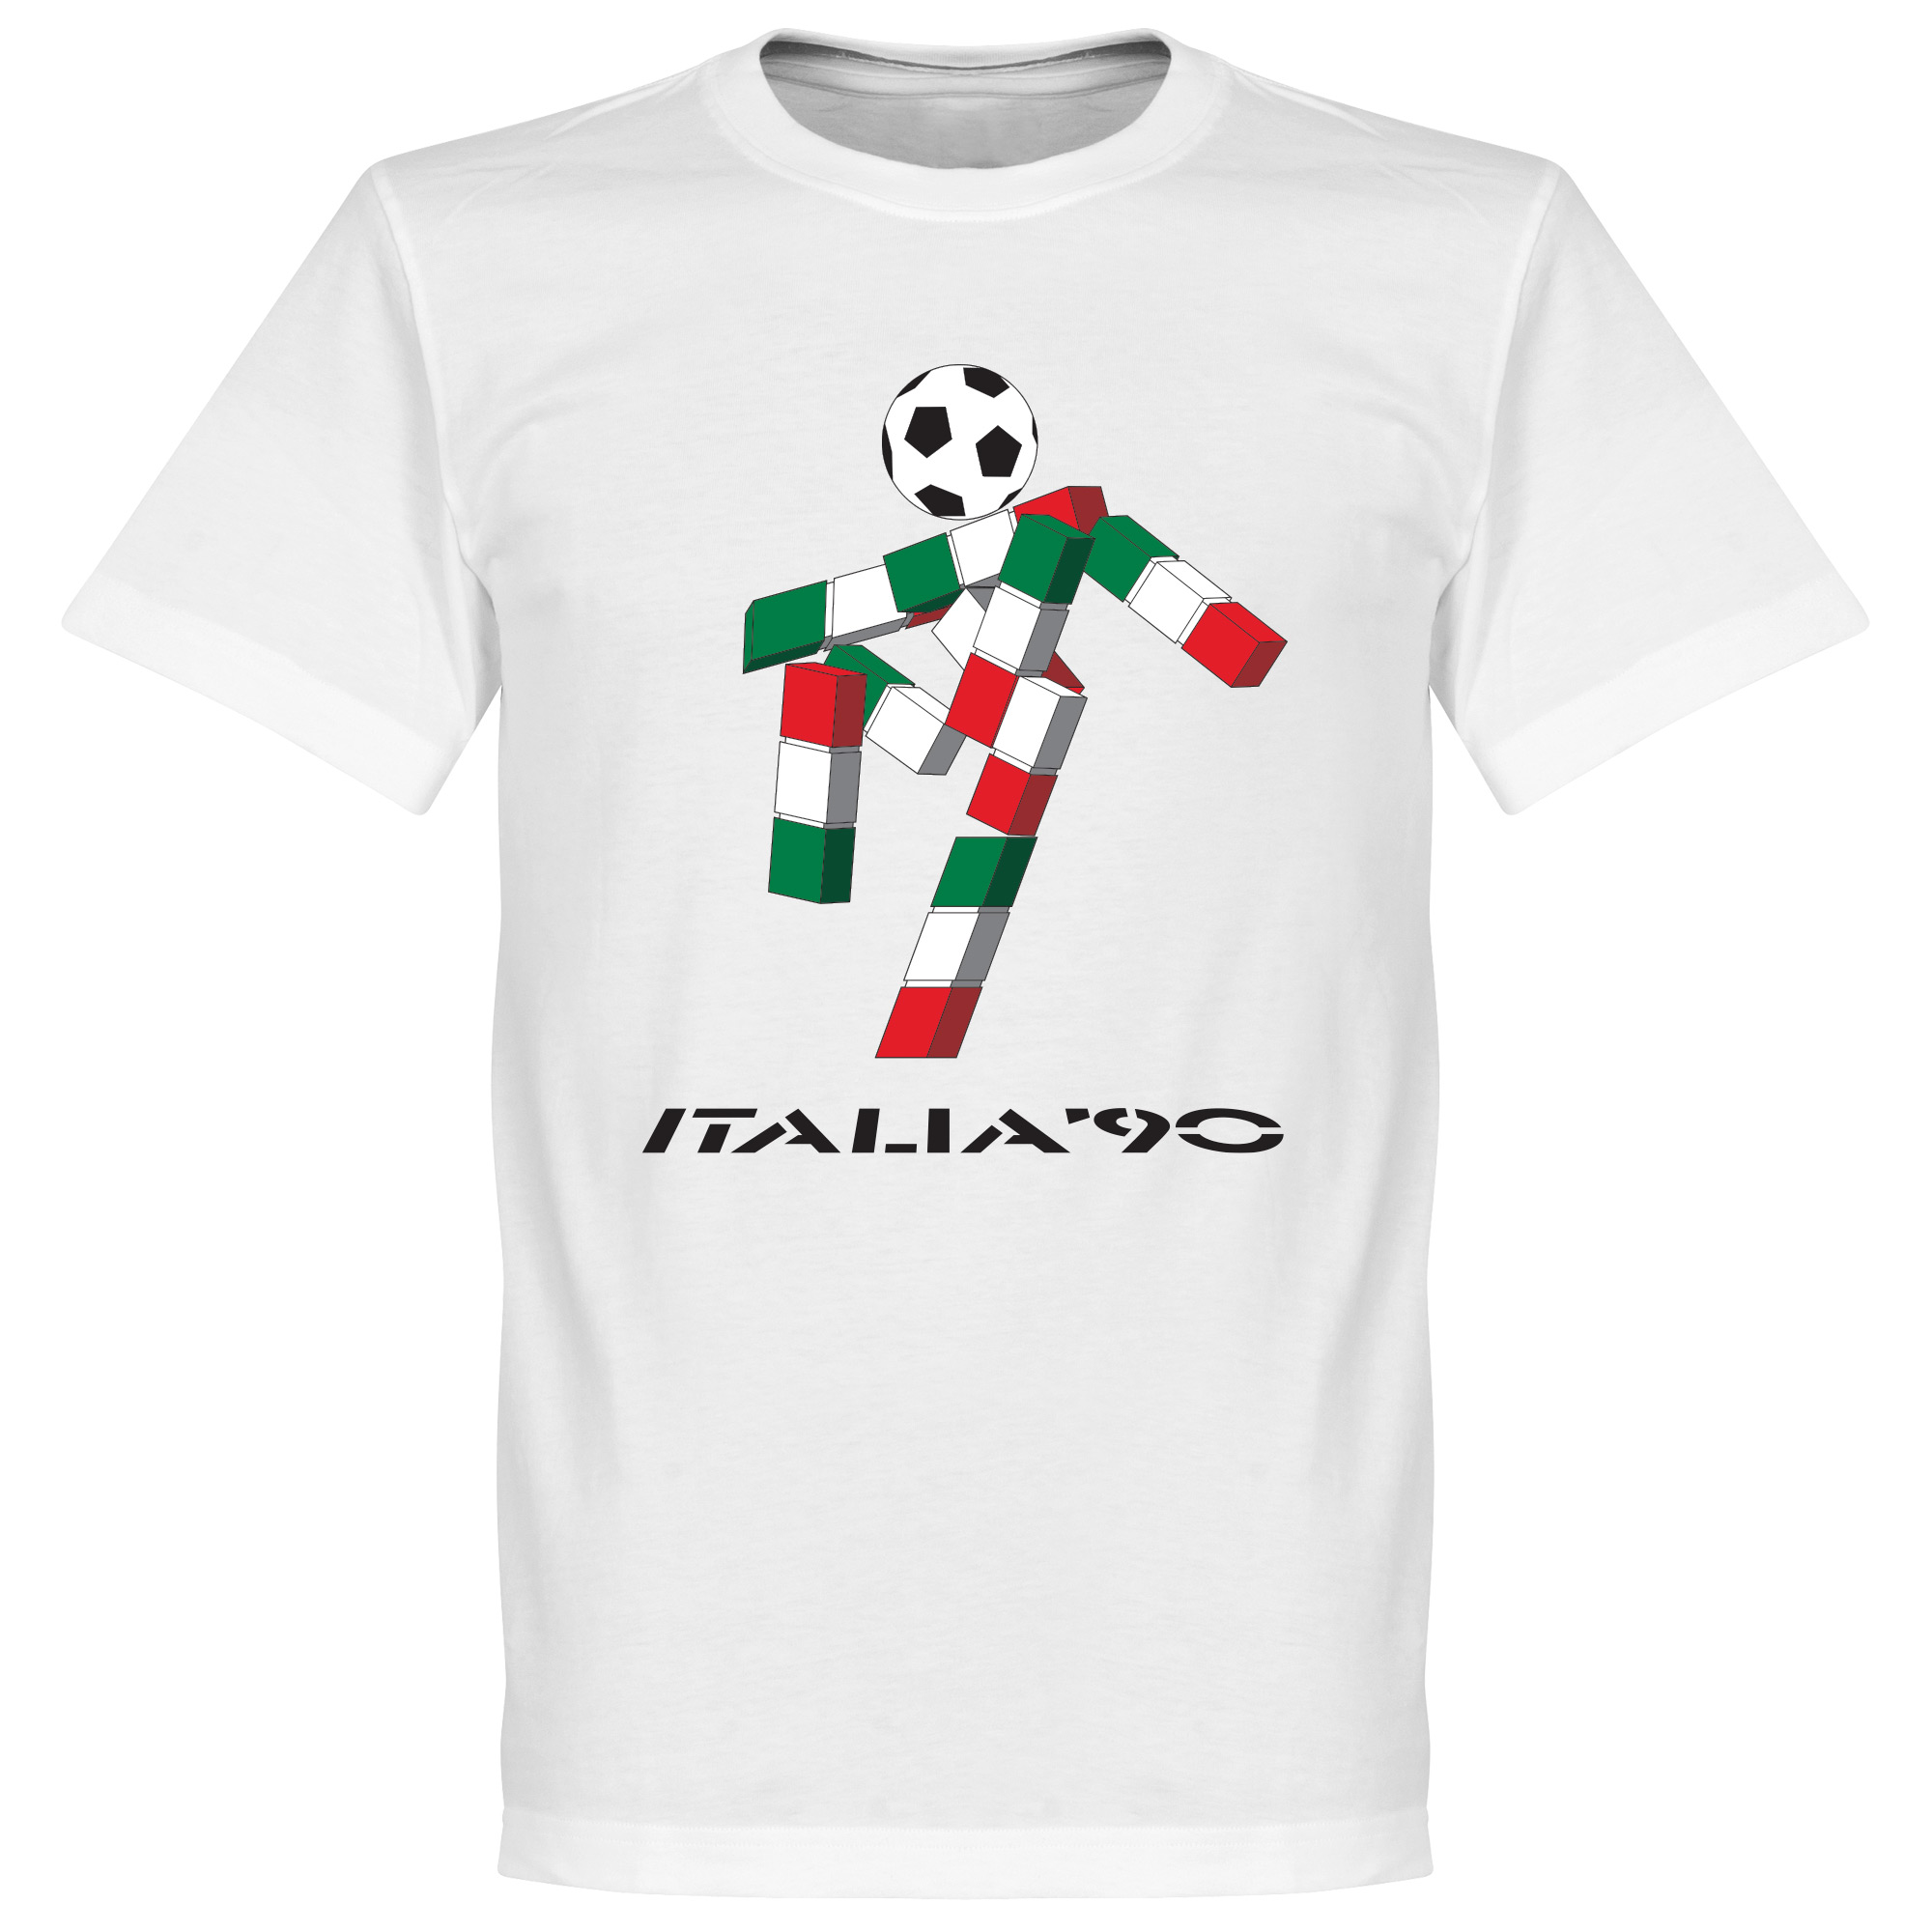 Italia 90 Mascot T-shirt S